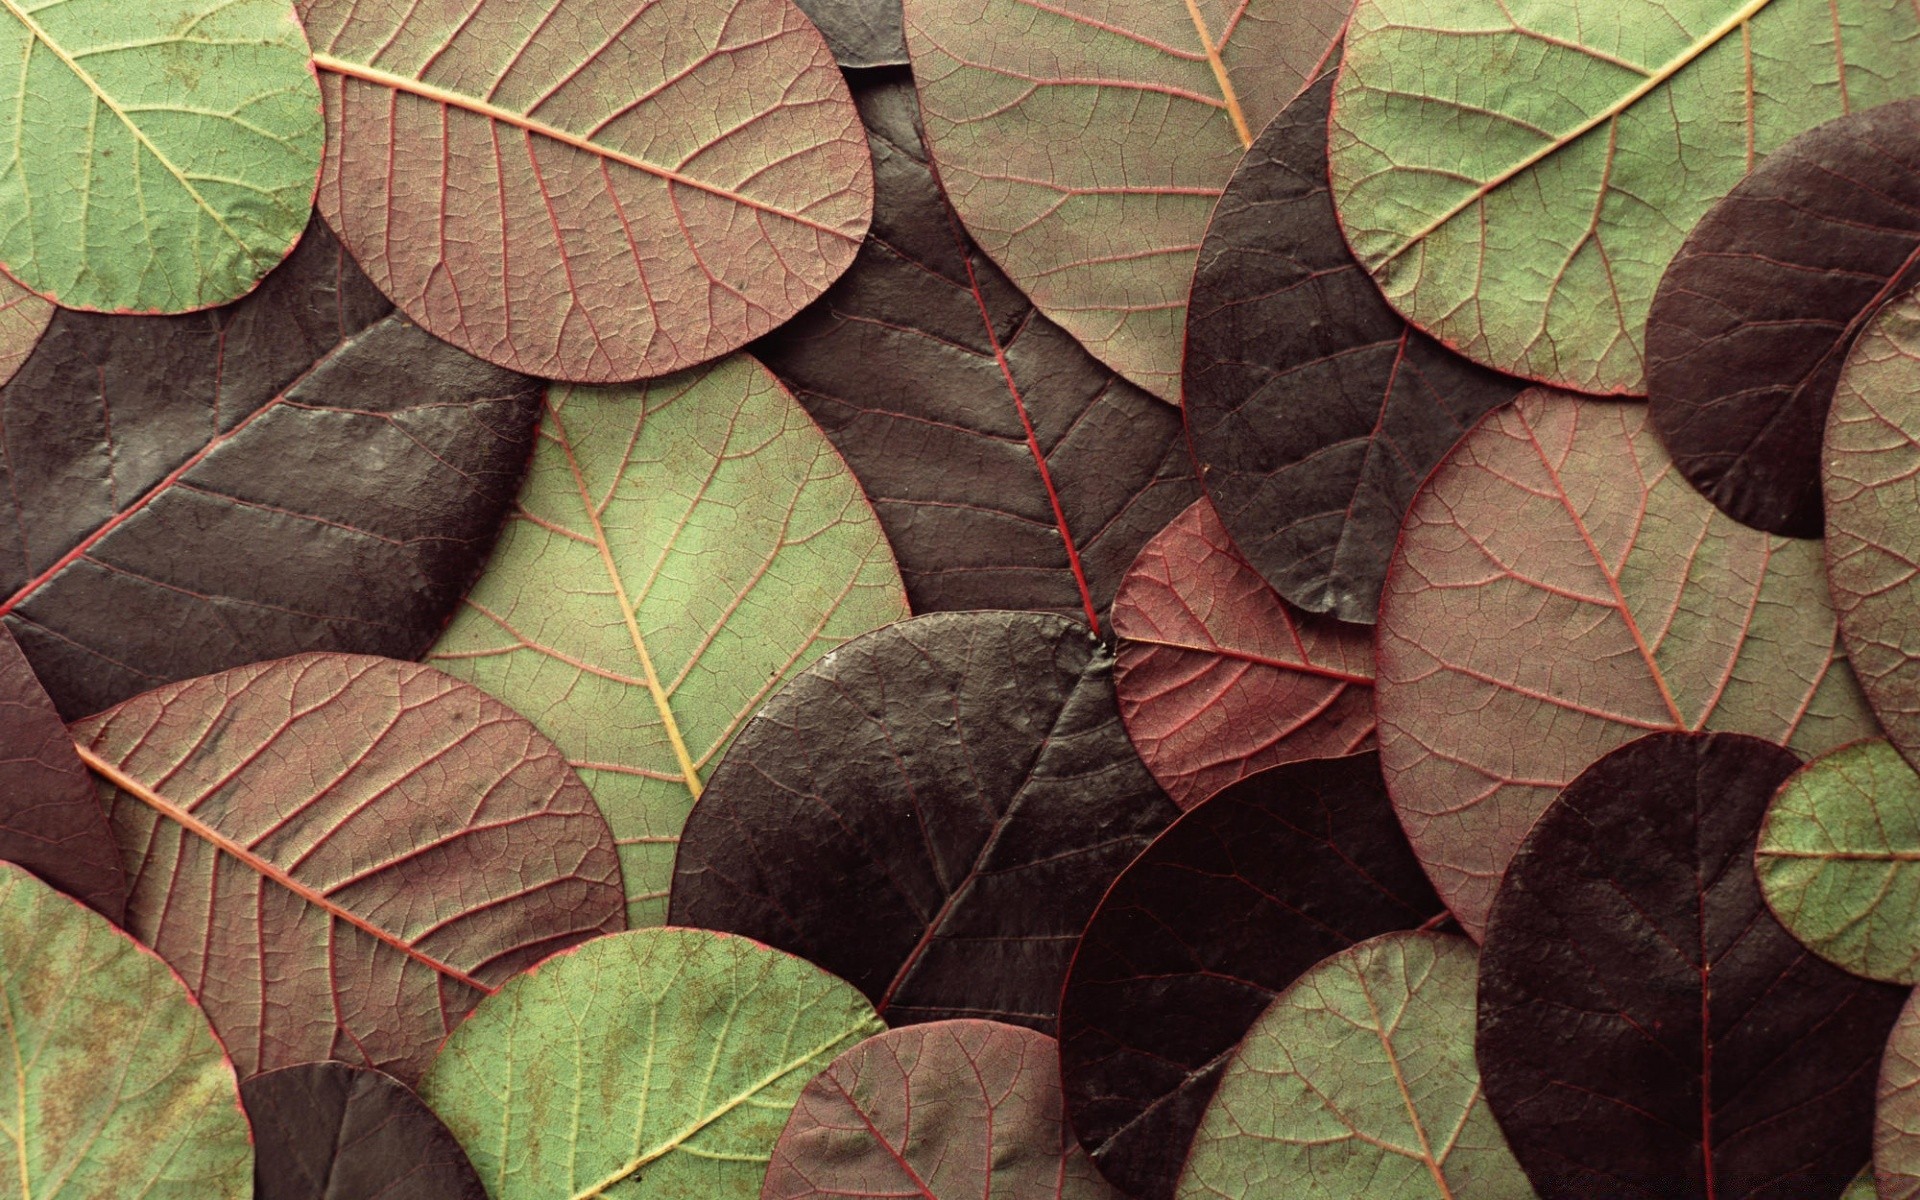 текстуры лист природа флора осень рост дерево шаблон рабочего стола вены яркий цвет древесины на открытом воздухе сезон крупным планом сад среды лето